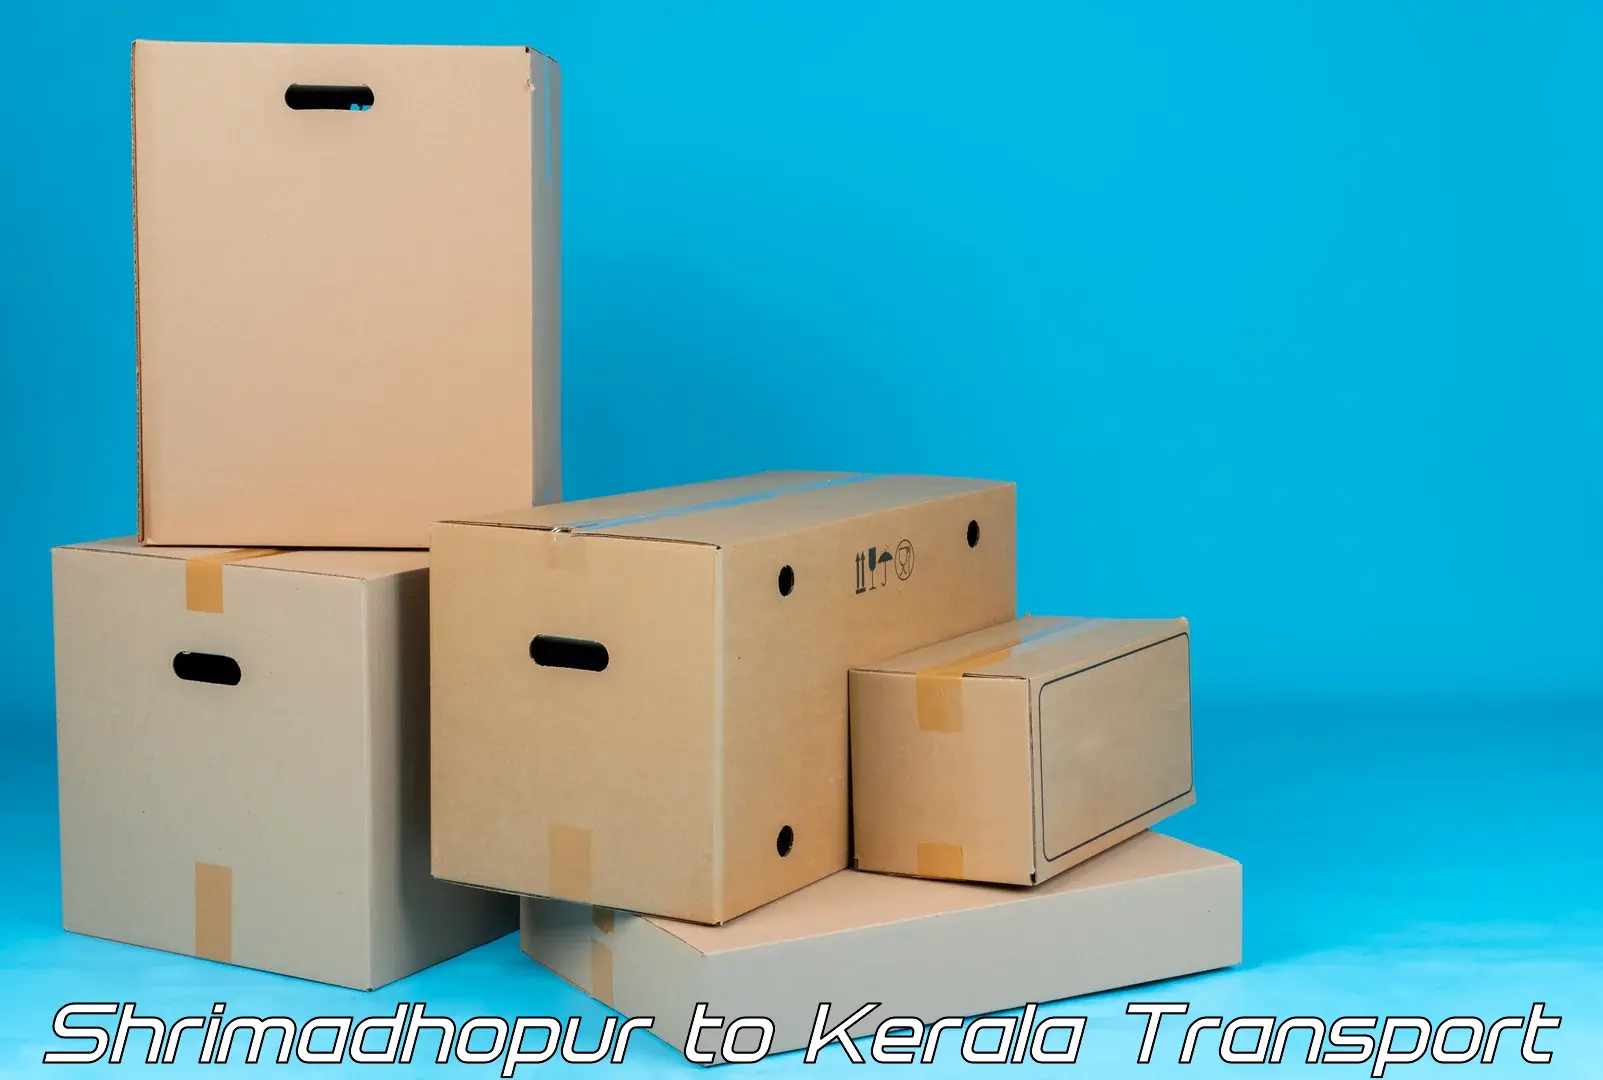 Vehicle parcel service Shrimadhopur to Palakkad